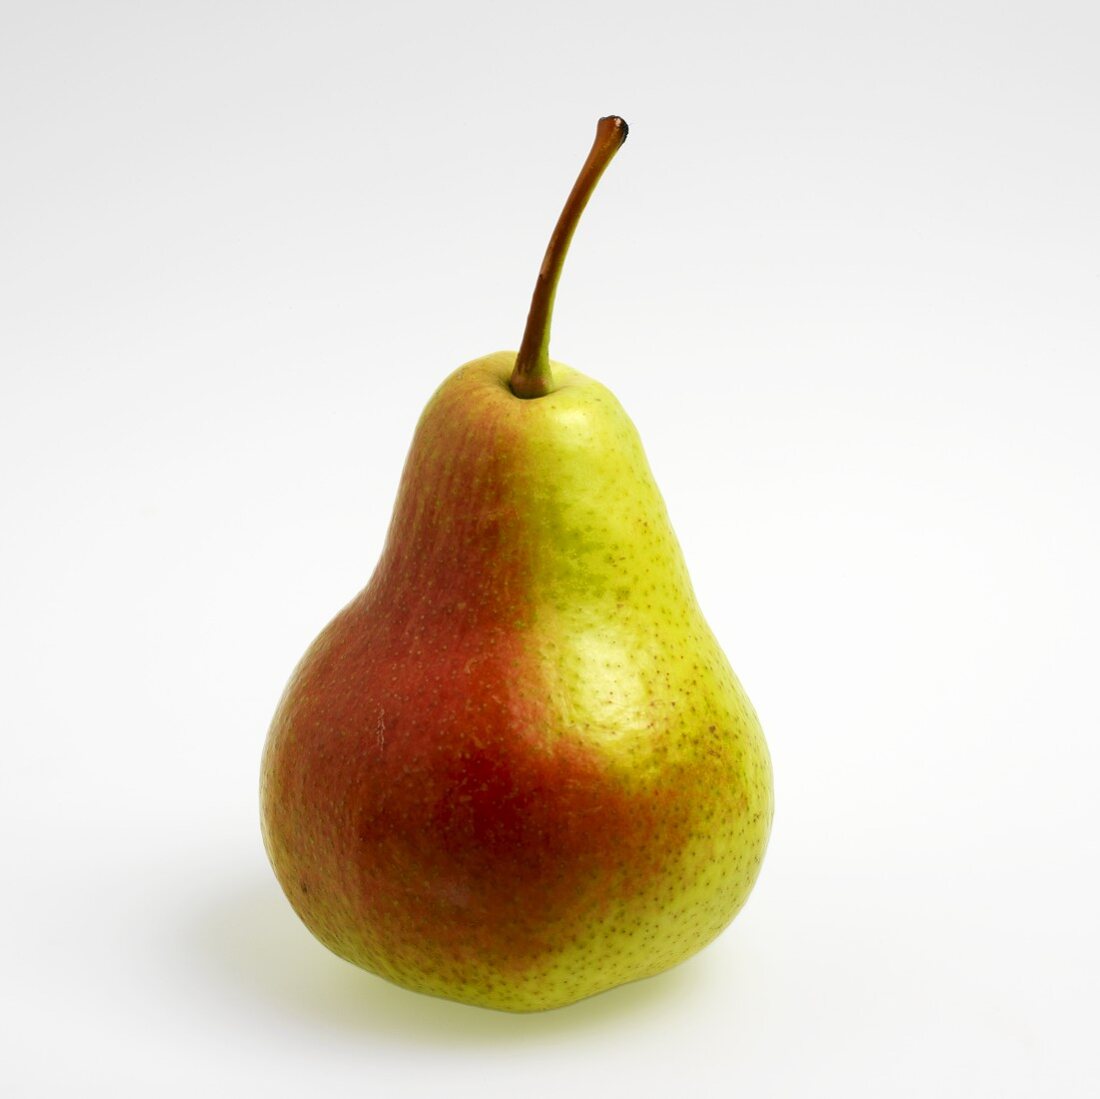 A fresh pear